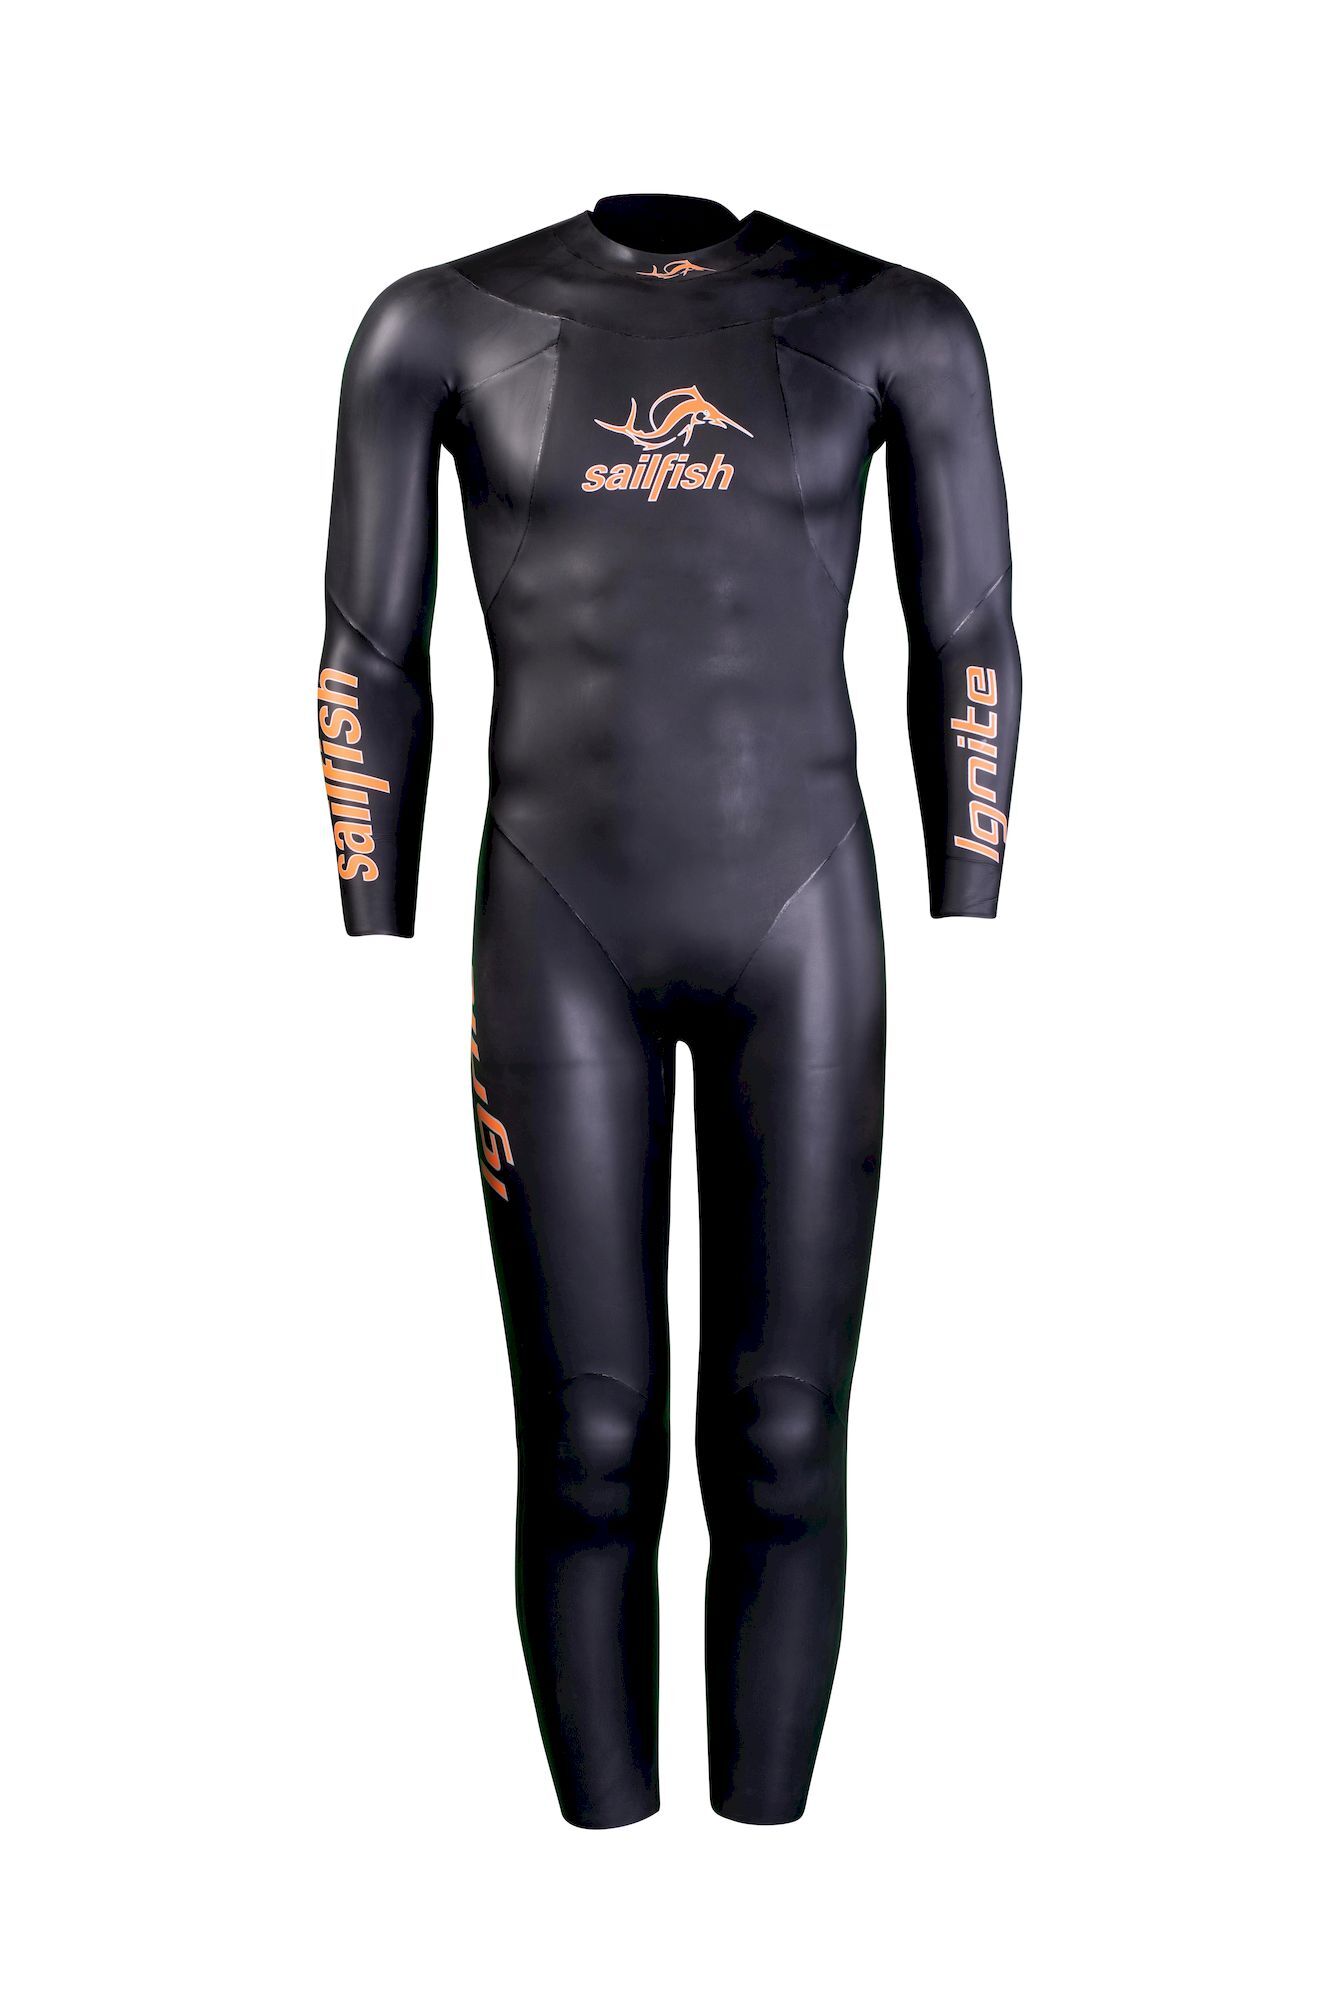 Sailfish Mens Ignite - Neoprene wetsuit - Men's